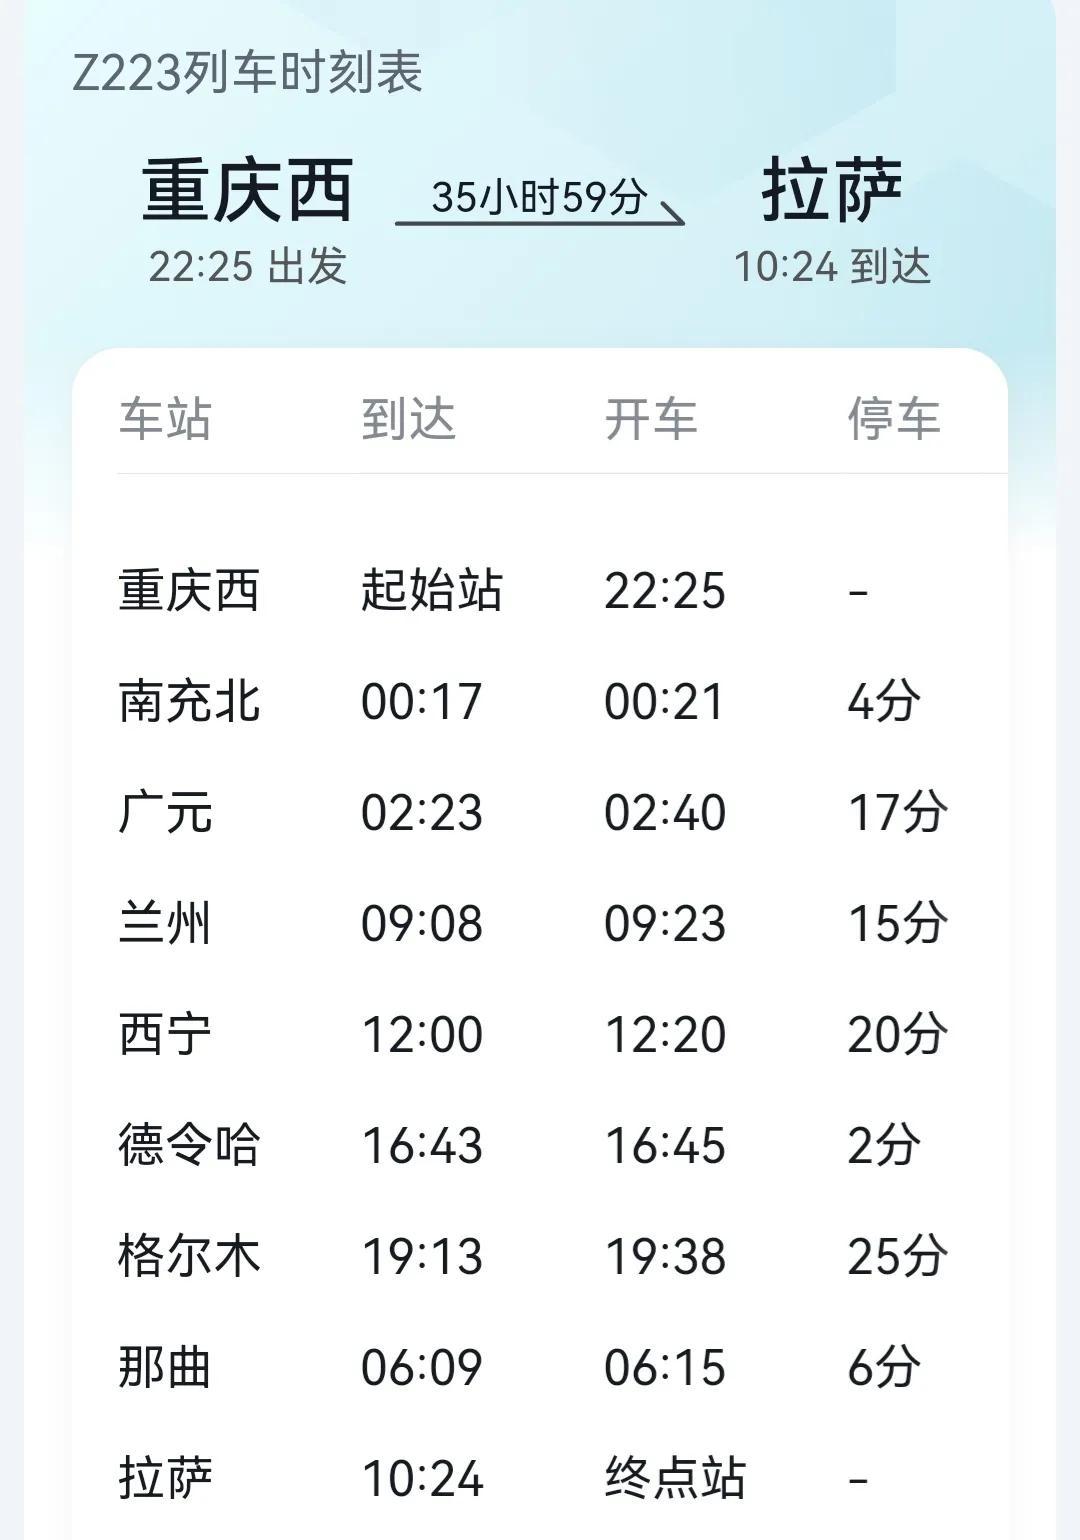 重庆到拉萨火车(杭州到拉萨的火车时刻表)